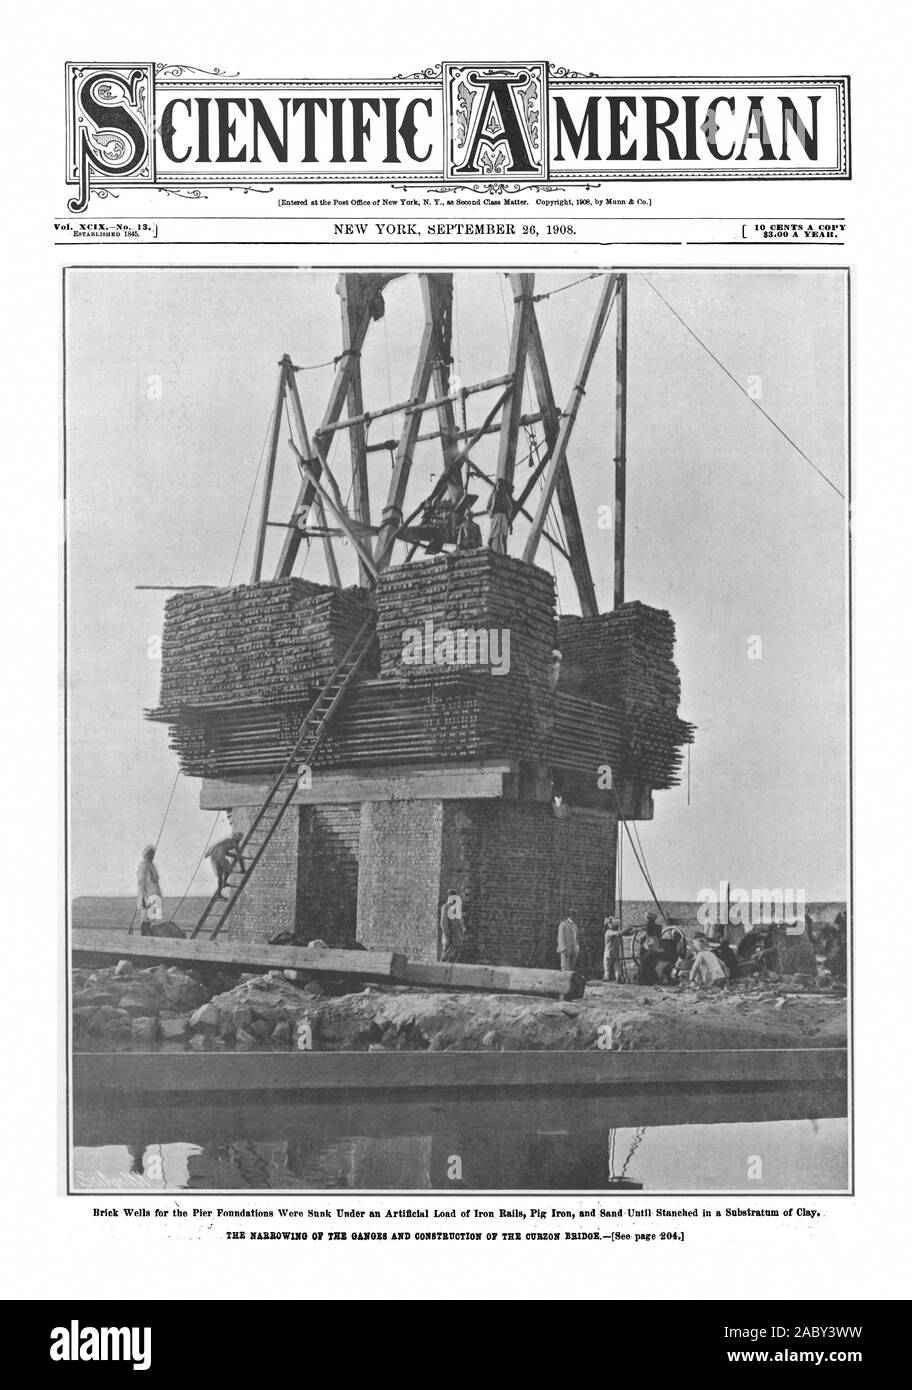 Scientific American, 1908-09-26, il restringimento del Gange e costruzione di Curzon Bridge Foto Stock